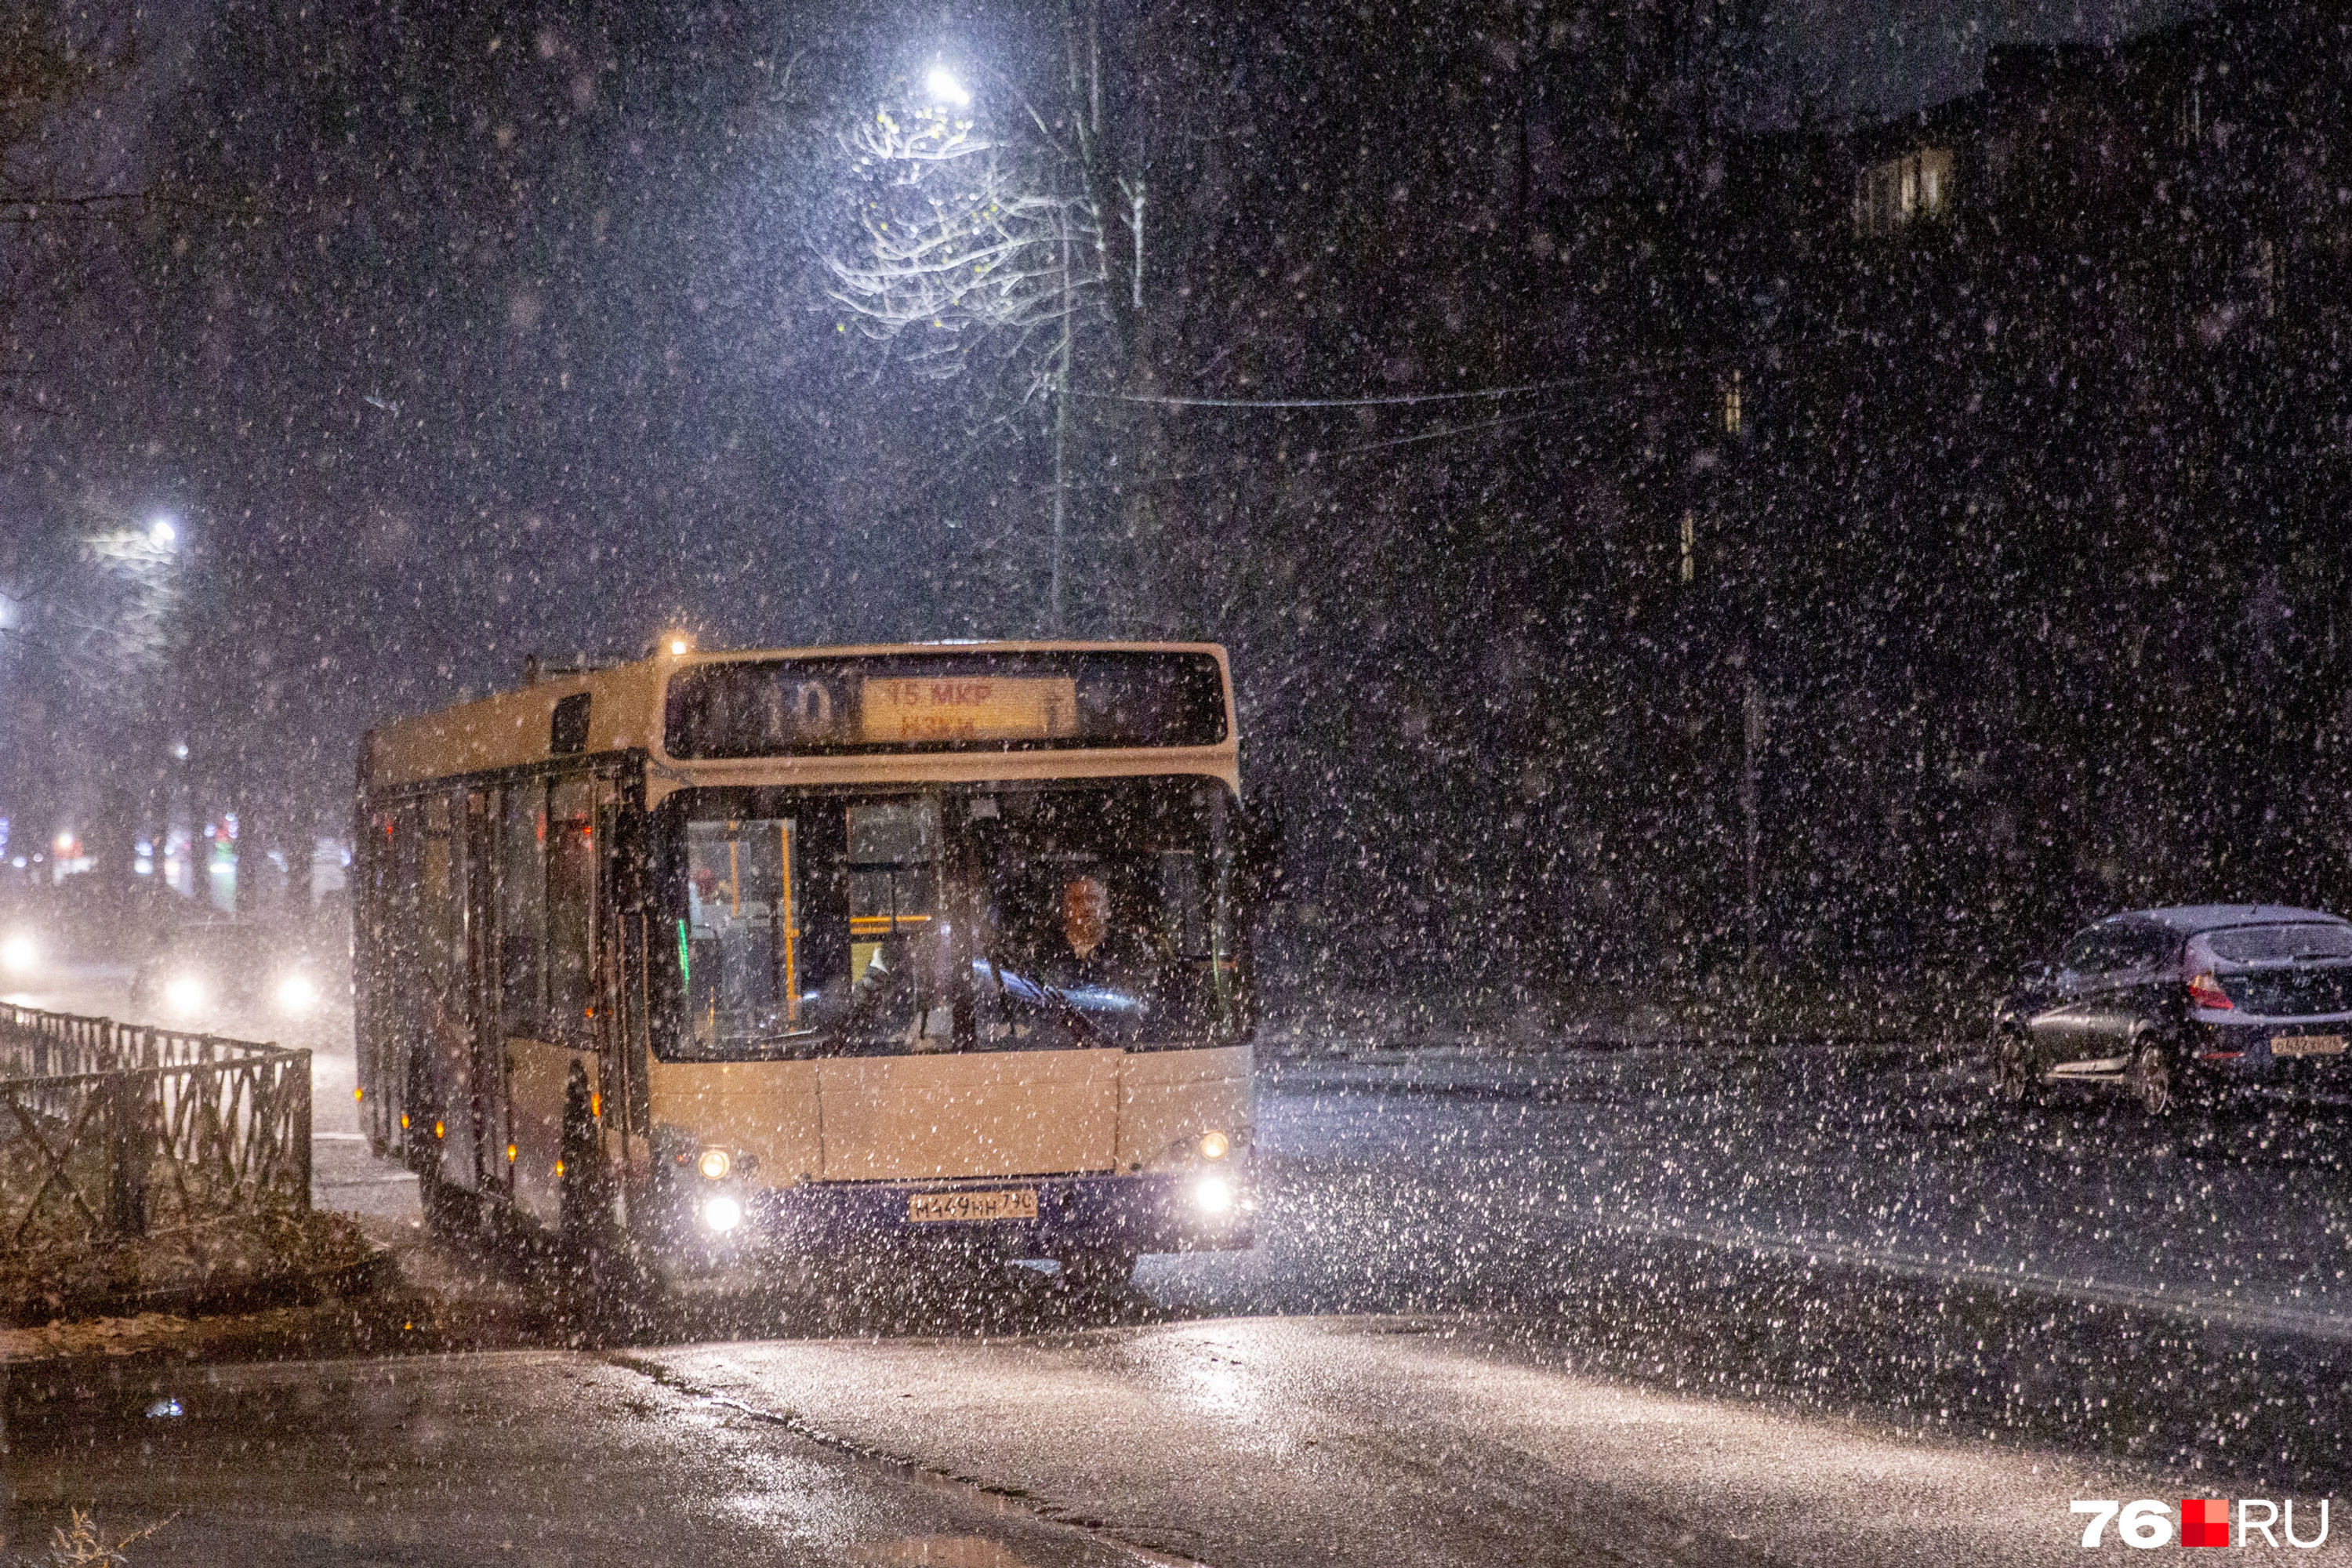 Автобус в снегу кажется игрушечным